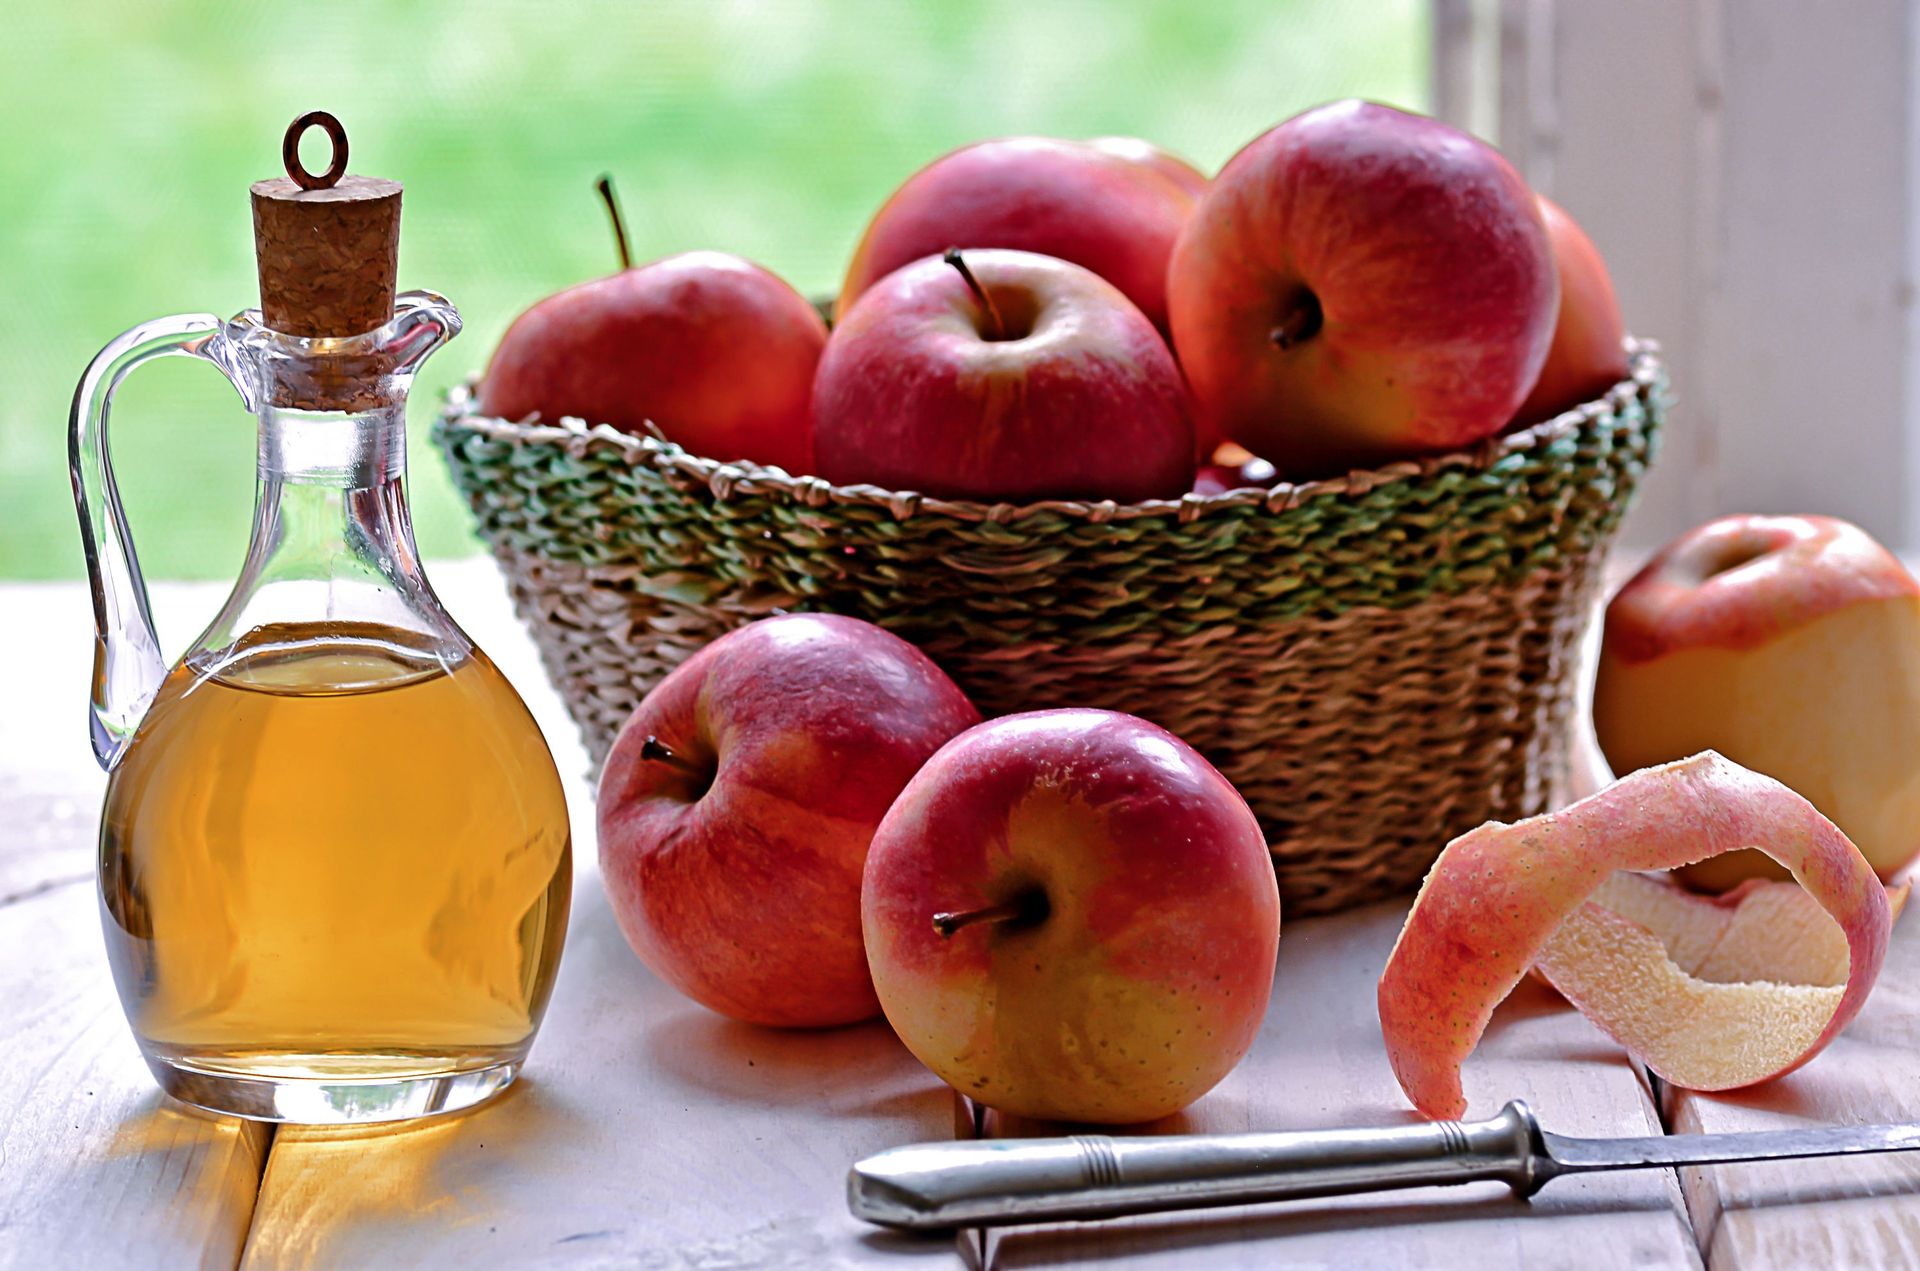 Ετικέτες δέρματος: Πώς να απαλλαγείτε από αυτά με μηλόξυδο.